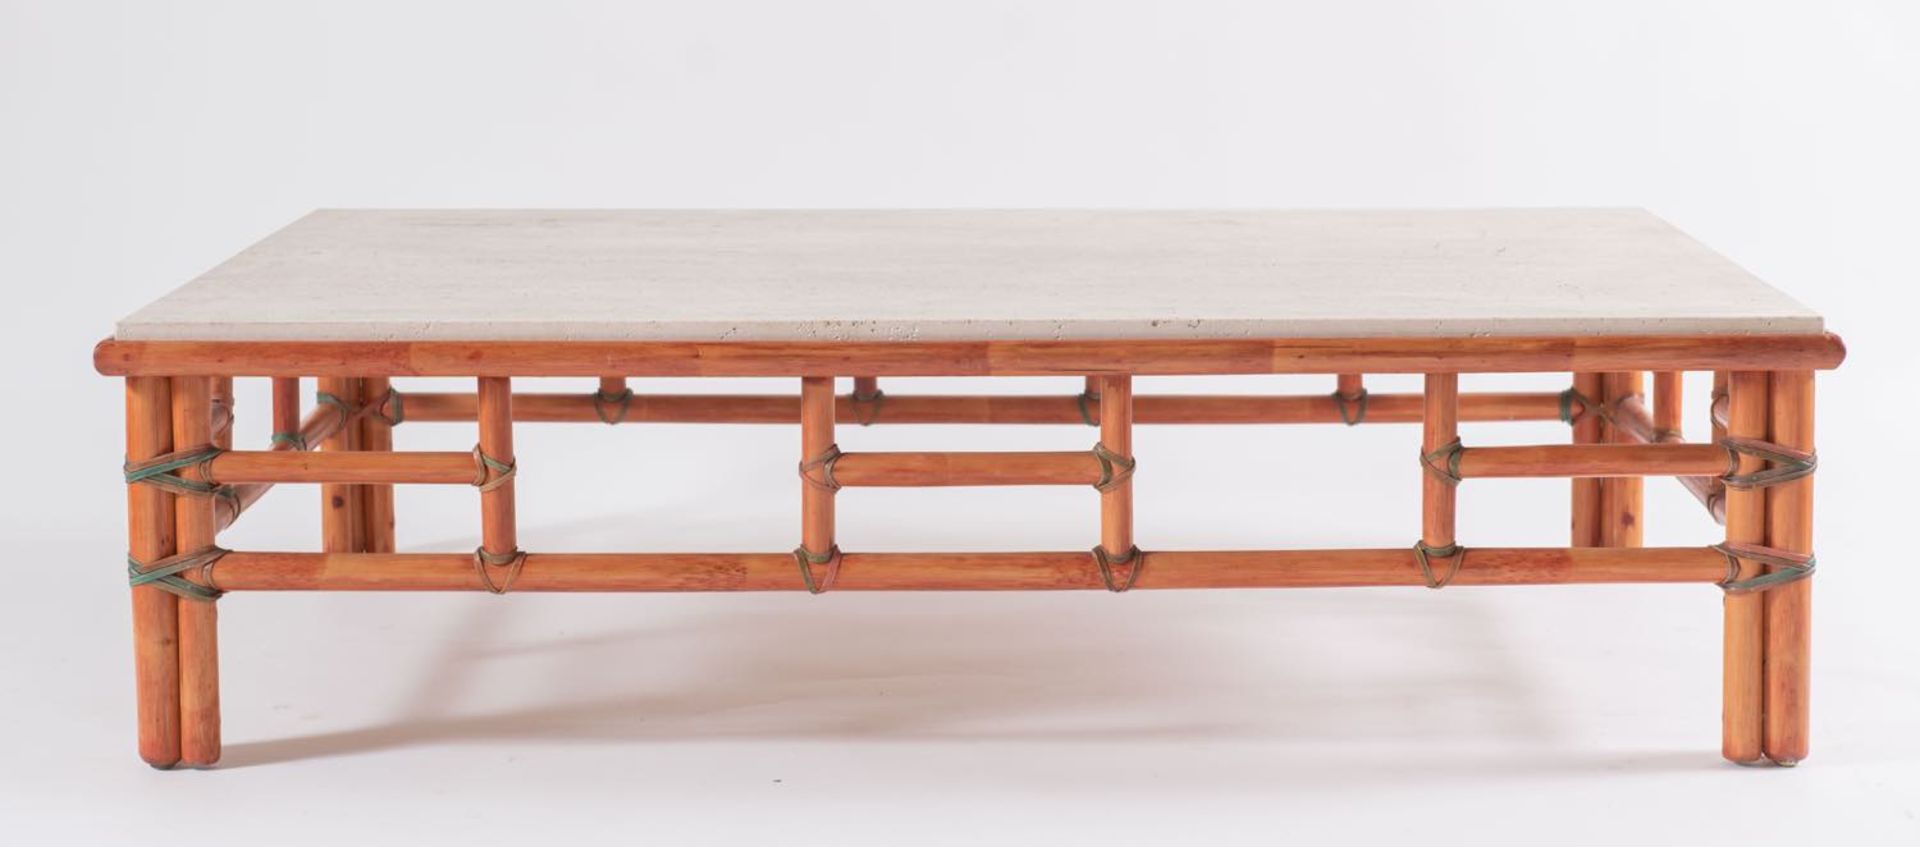 Tavolino da salotto in bambù tinto, Italia, Anni ‘70.Piano in travertino incassato, legature in - Bild 2 aus 3